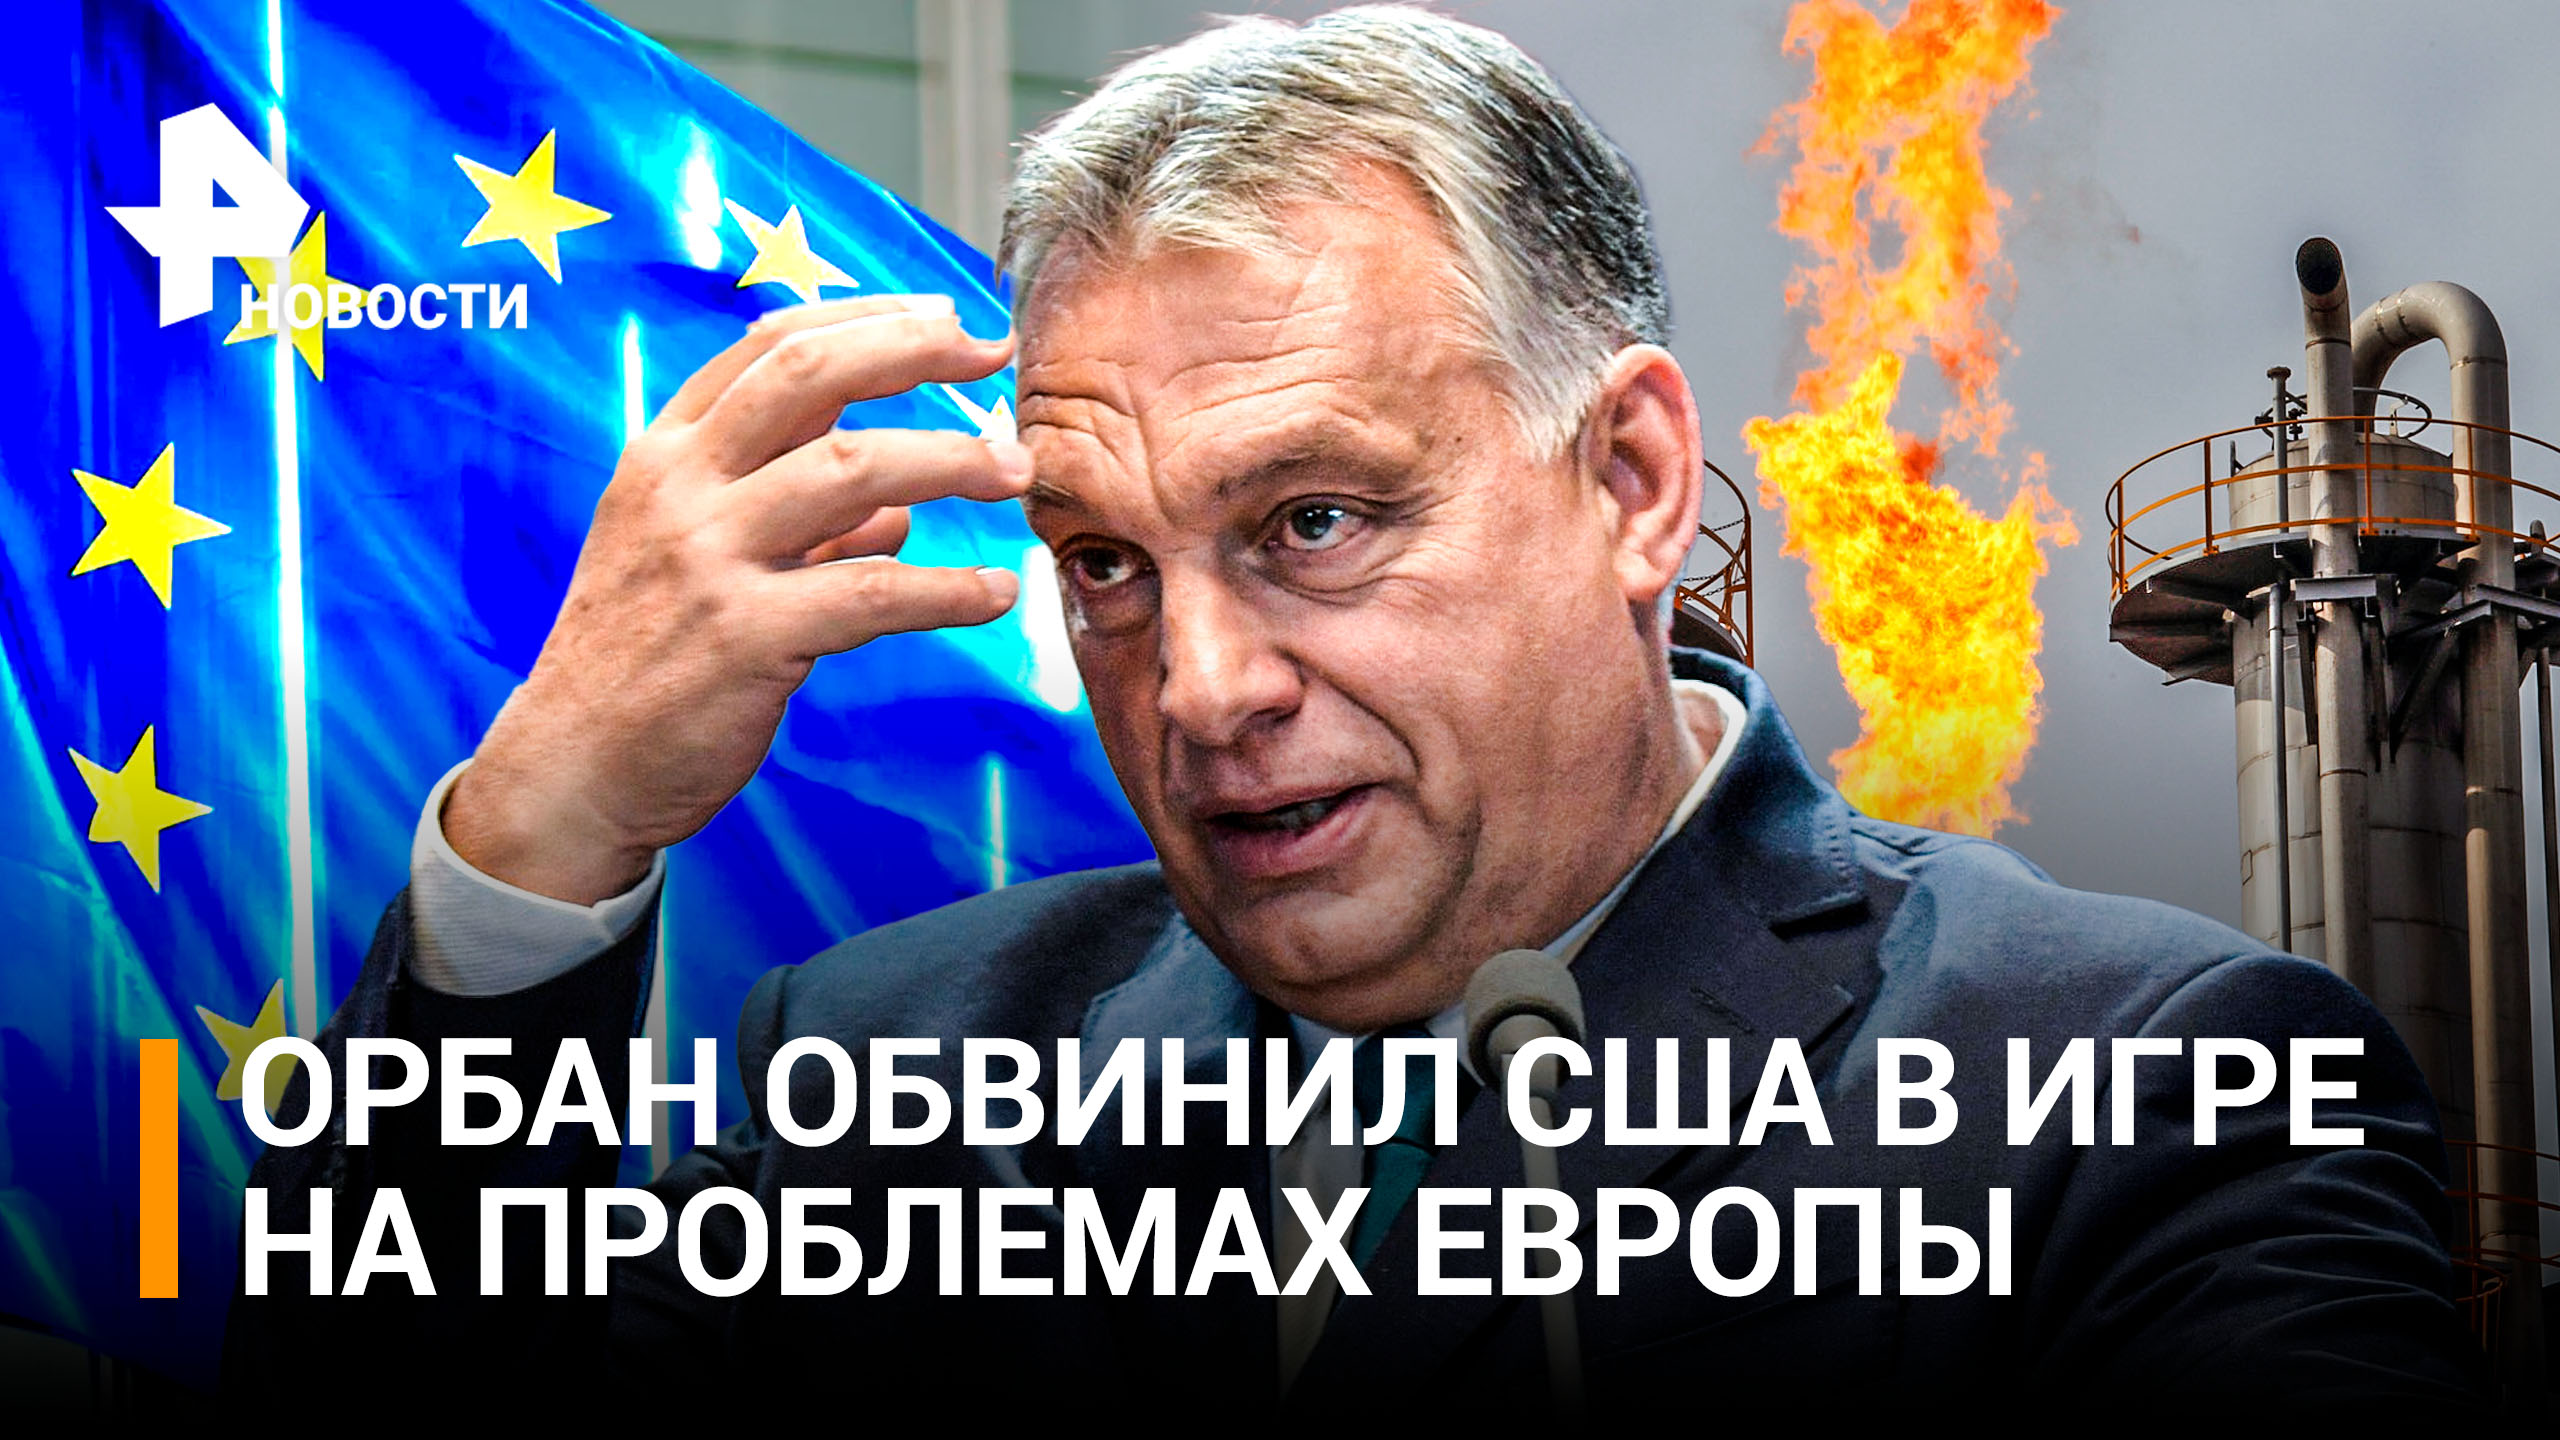 Орбан: цены бы упали вдвое, если бы ЕС изменил санкционную политику / РЕН Новости